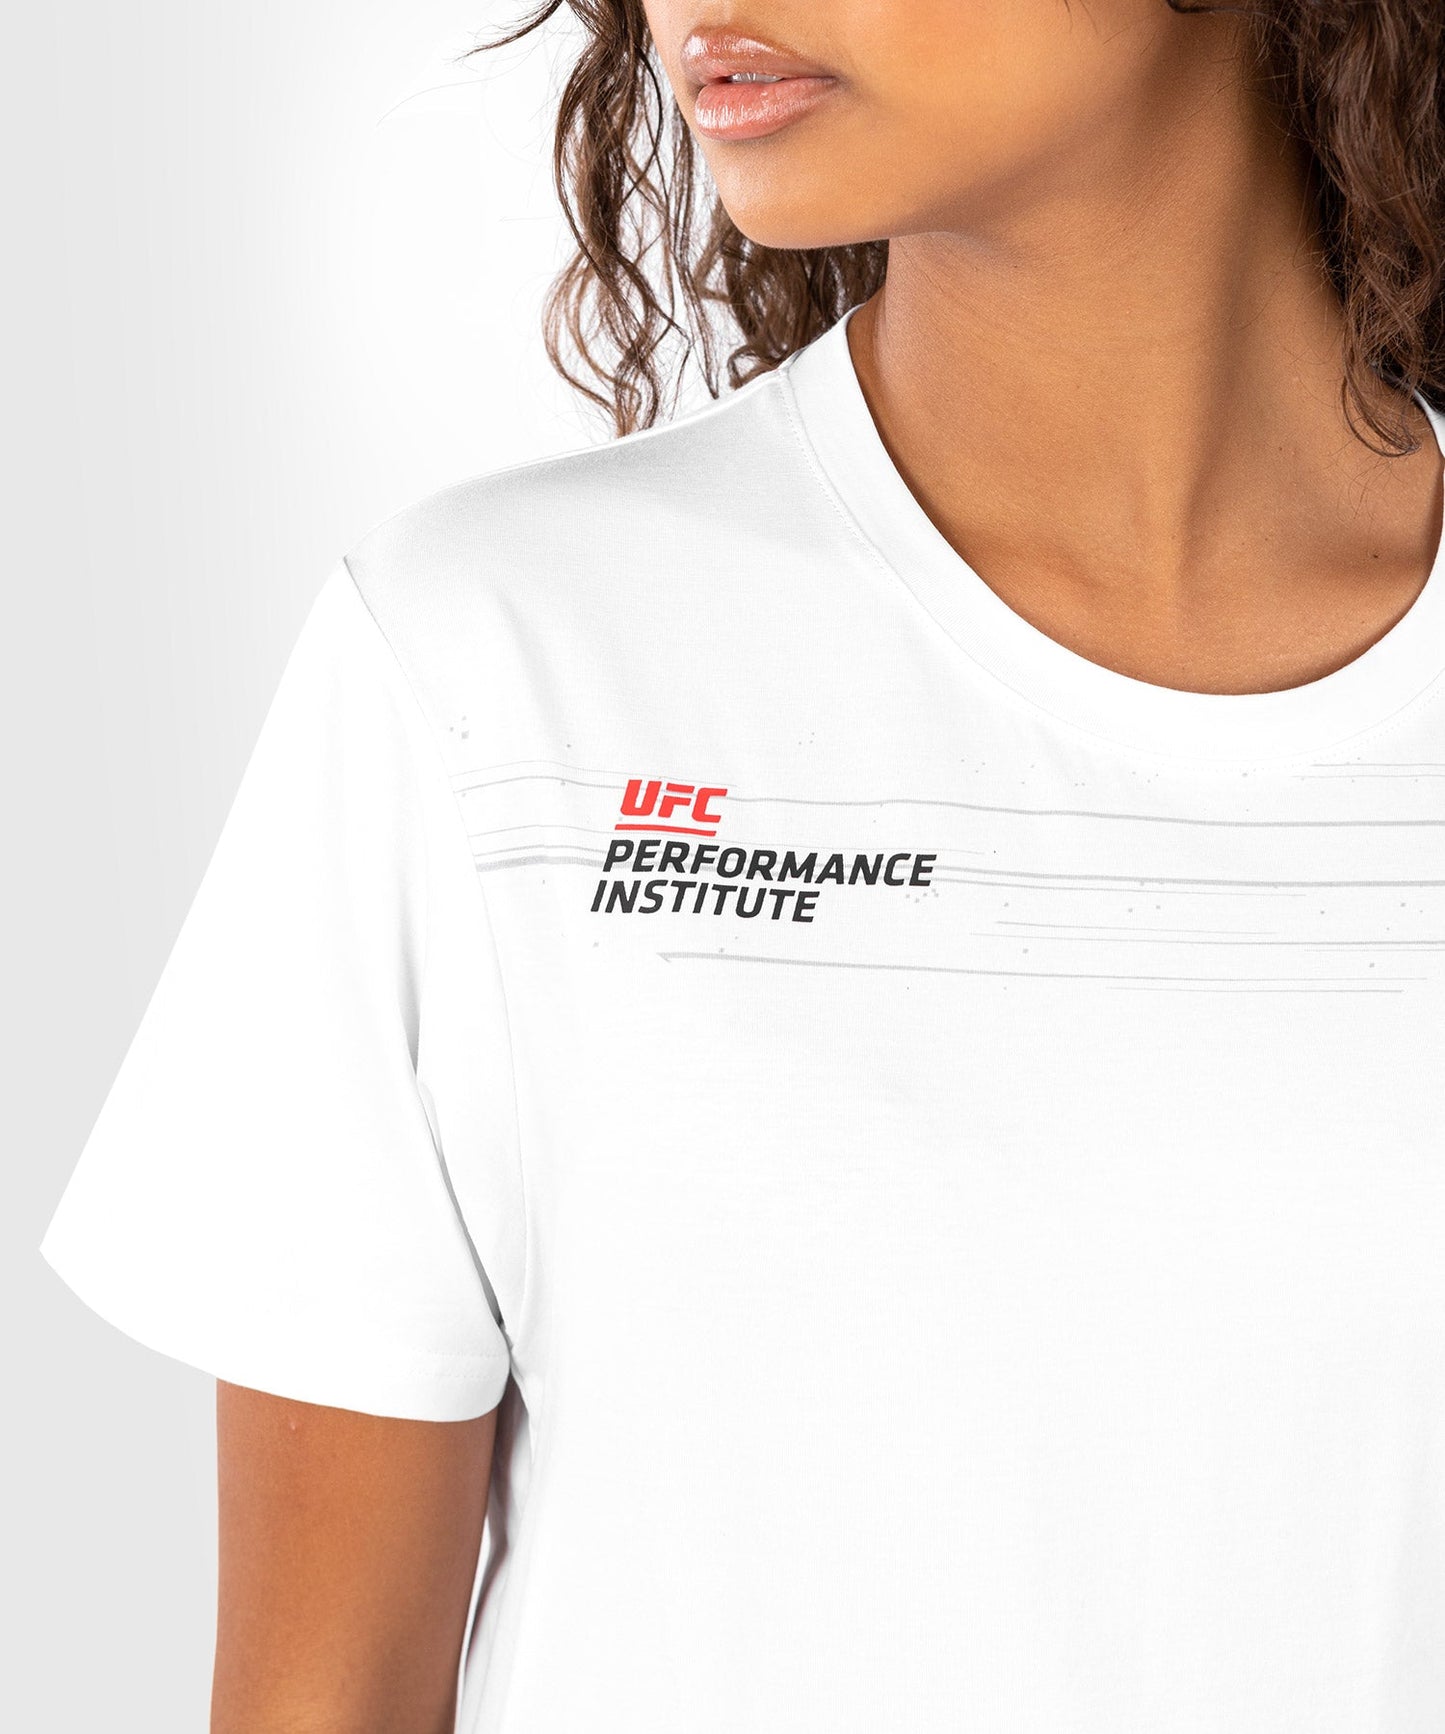 UFC Performance Institute 2.0 T-Shirt für Frauen - Weiß